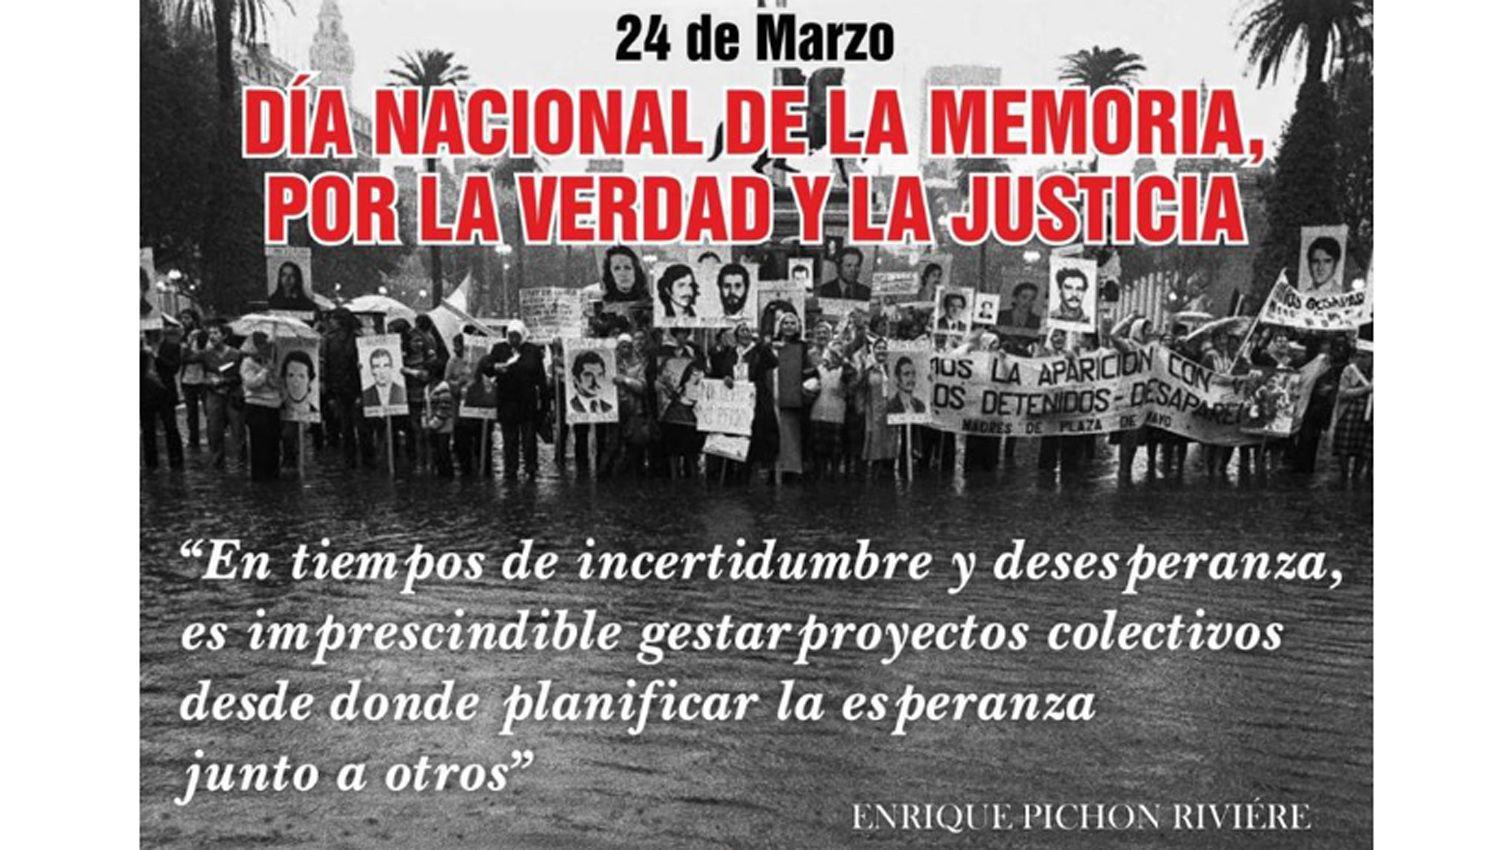 El gobernador Zamora recordoacute el Diacutea Nacional de la Memoria por la Verdad y la Justicia